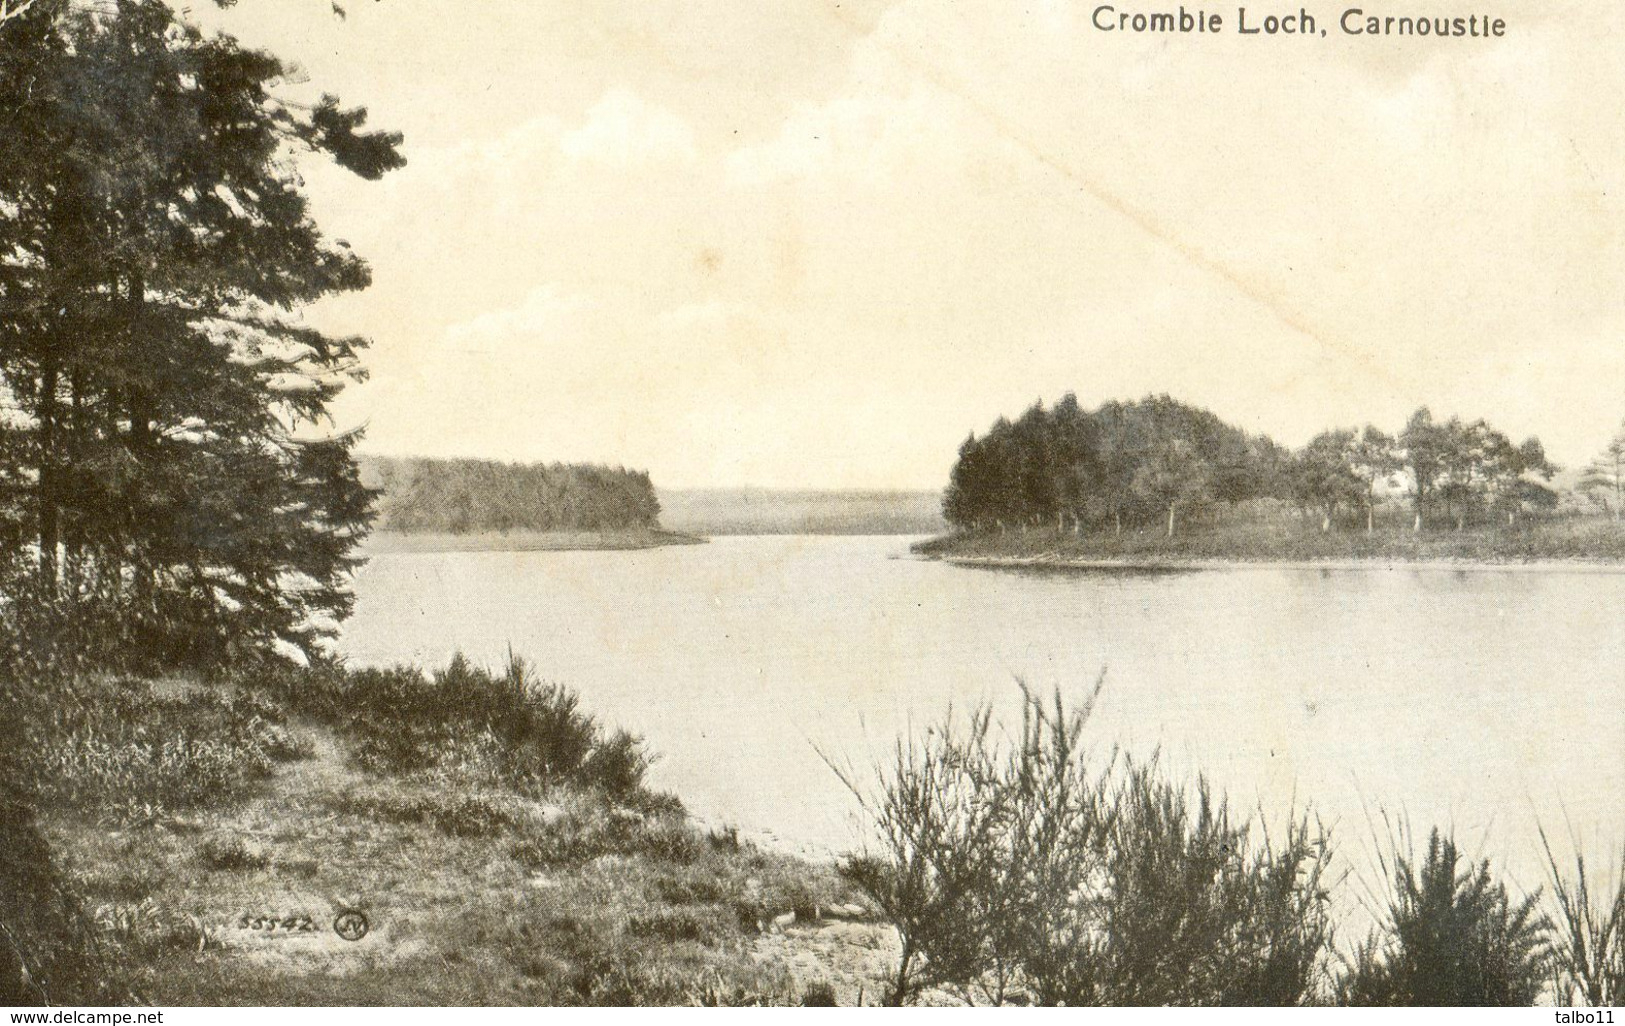 Carnoustie - Cromble Loch - Angus